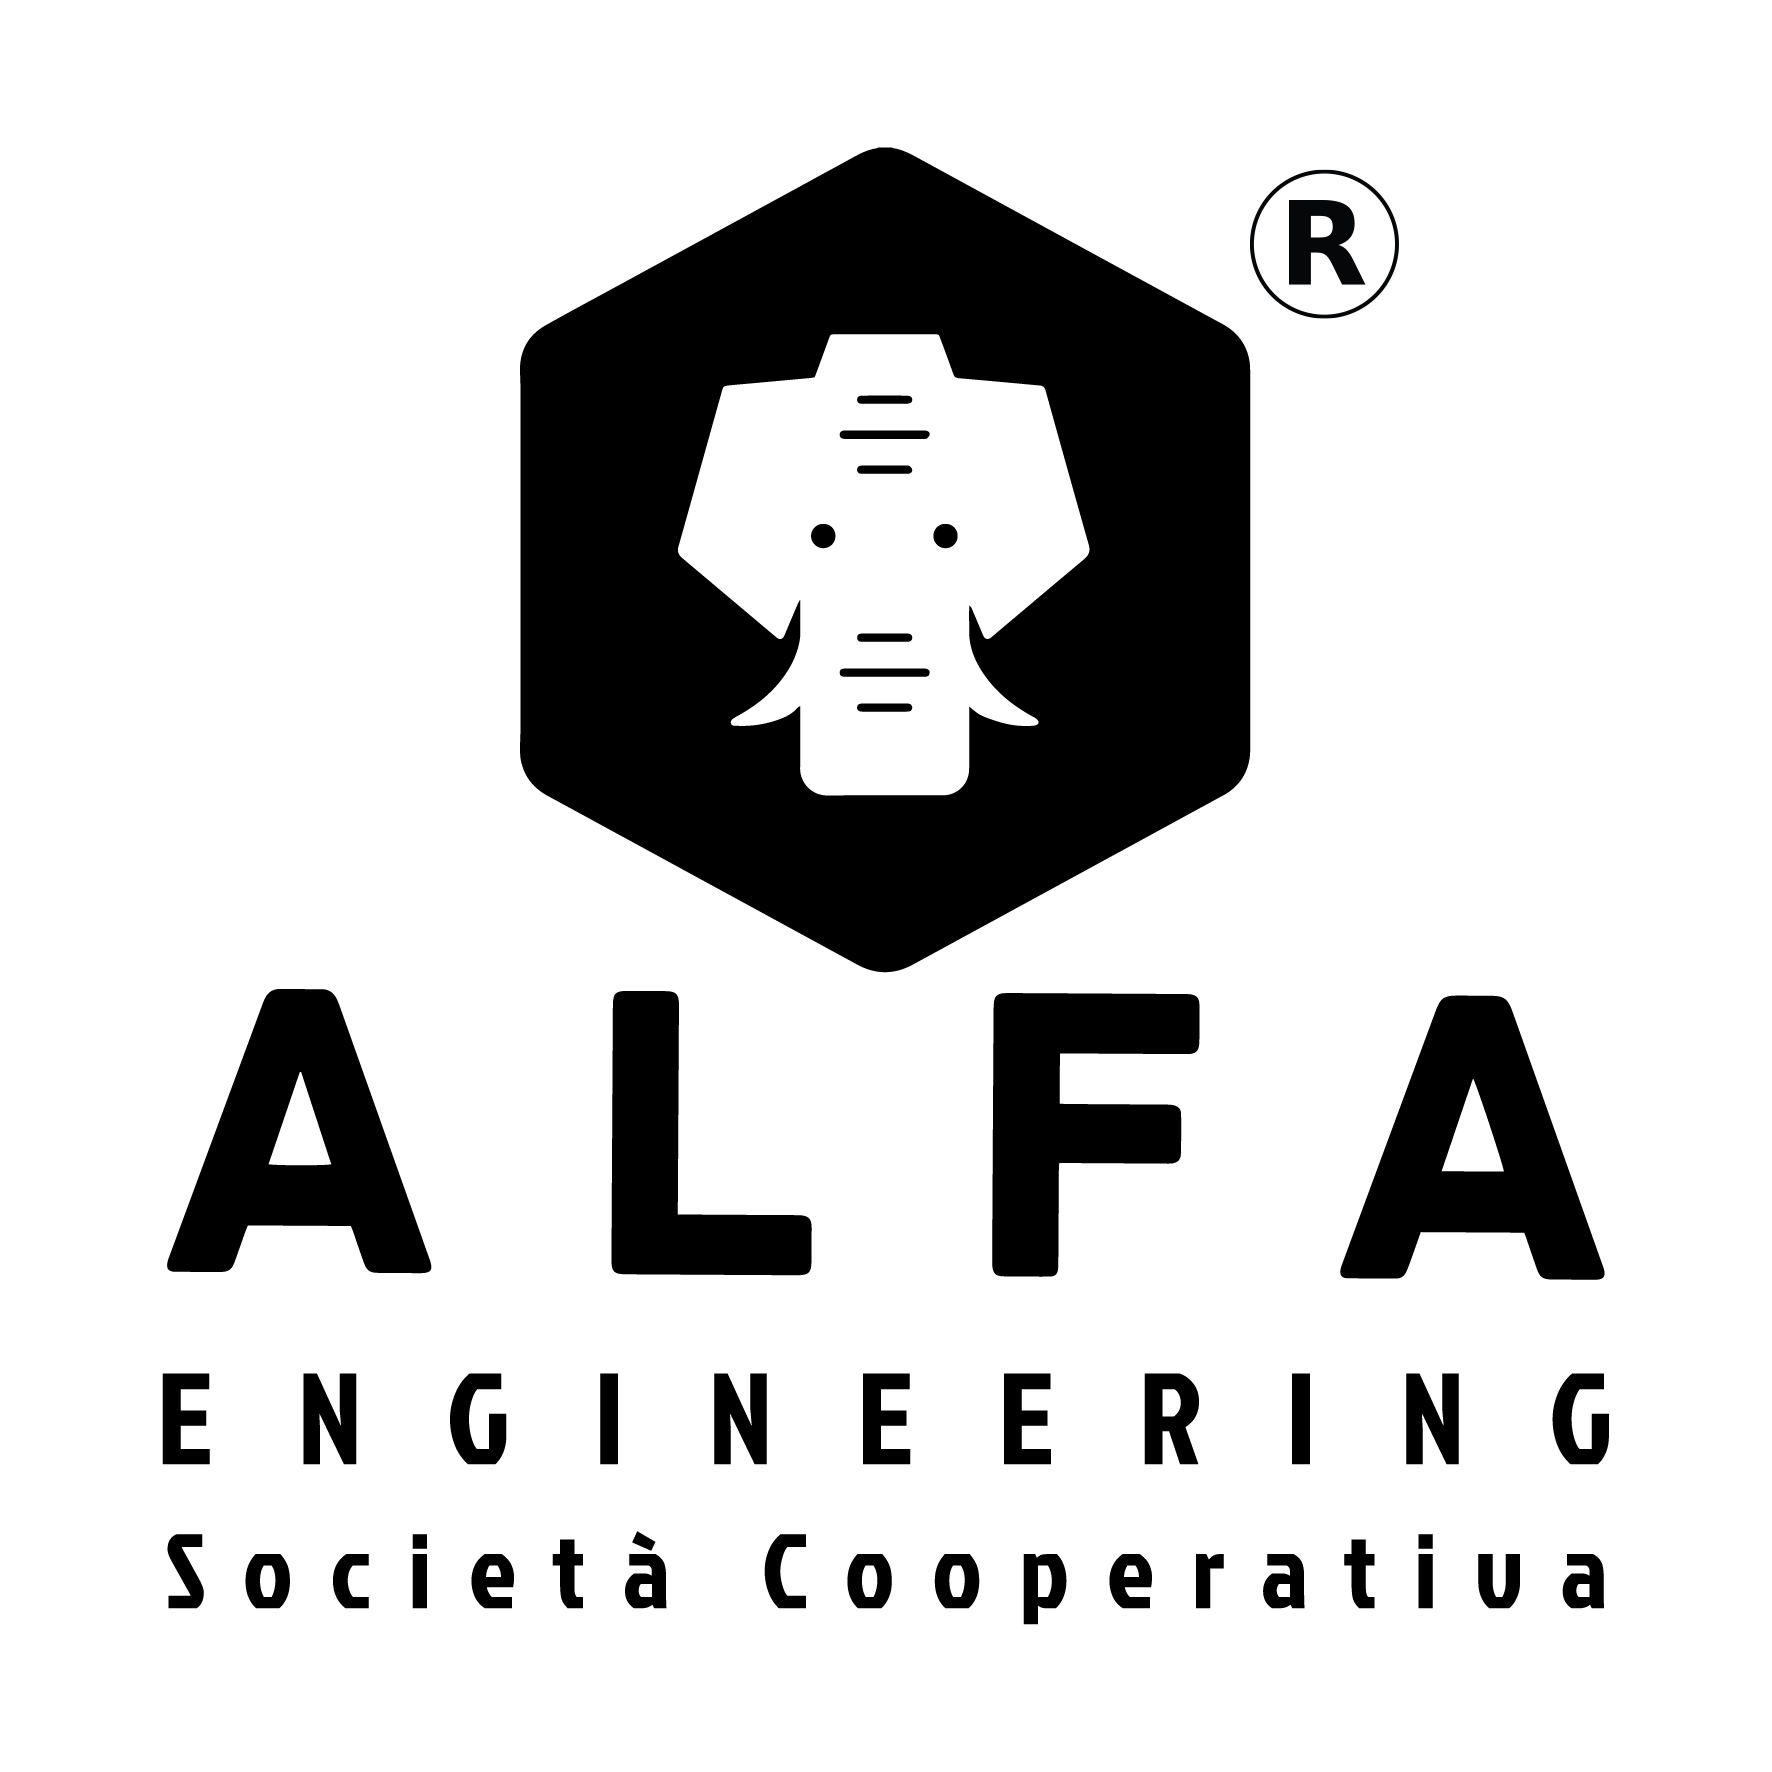 Alfa Engineering